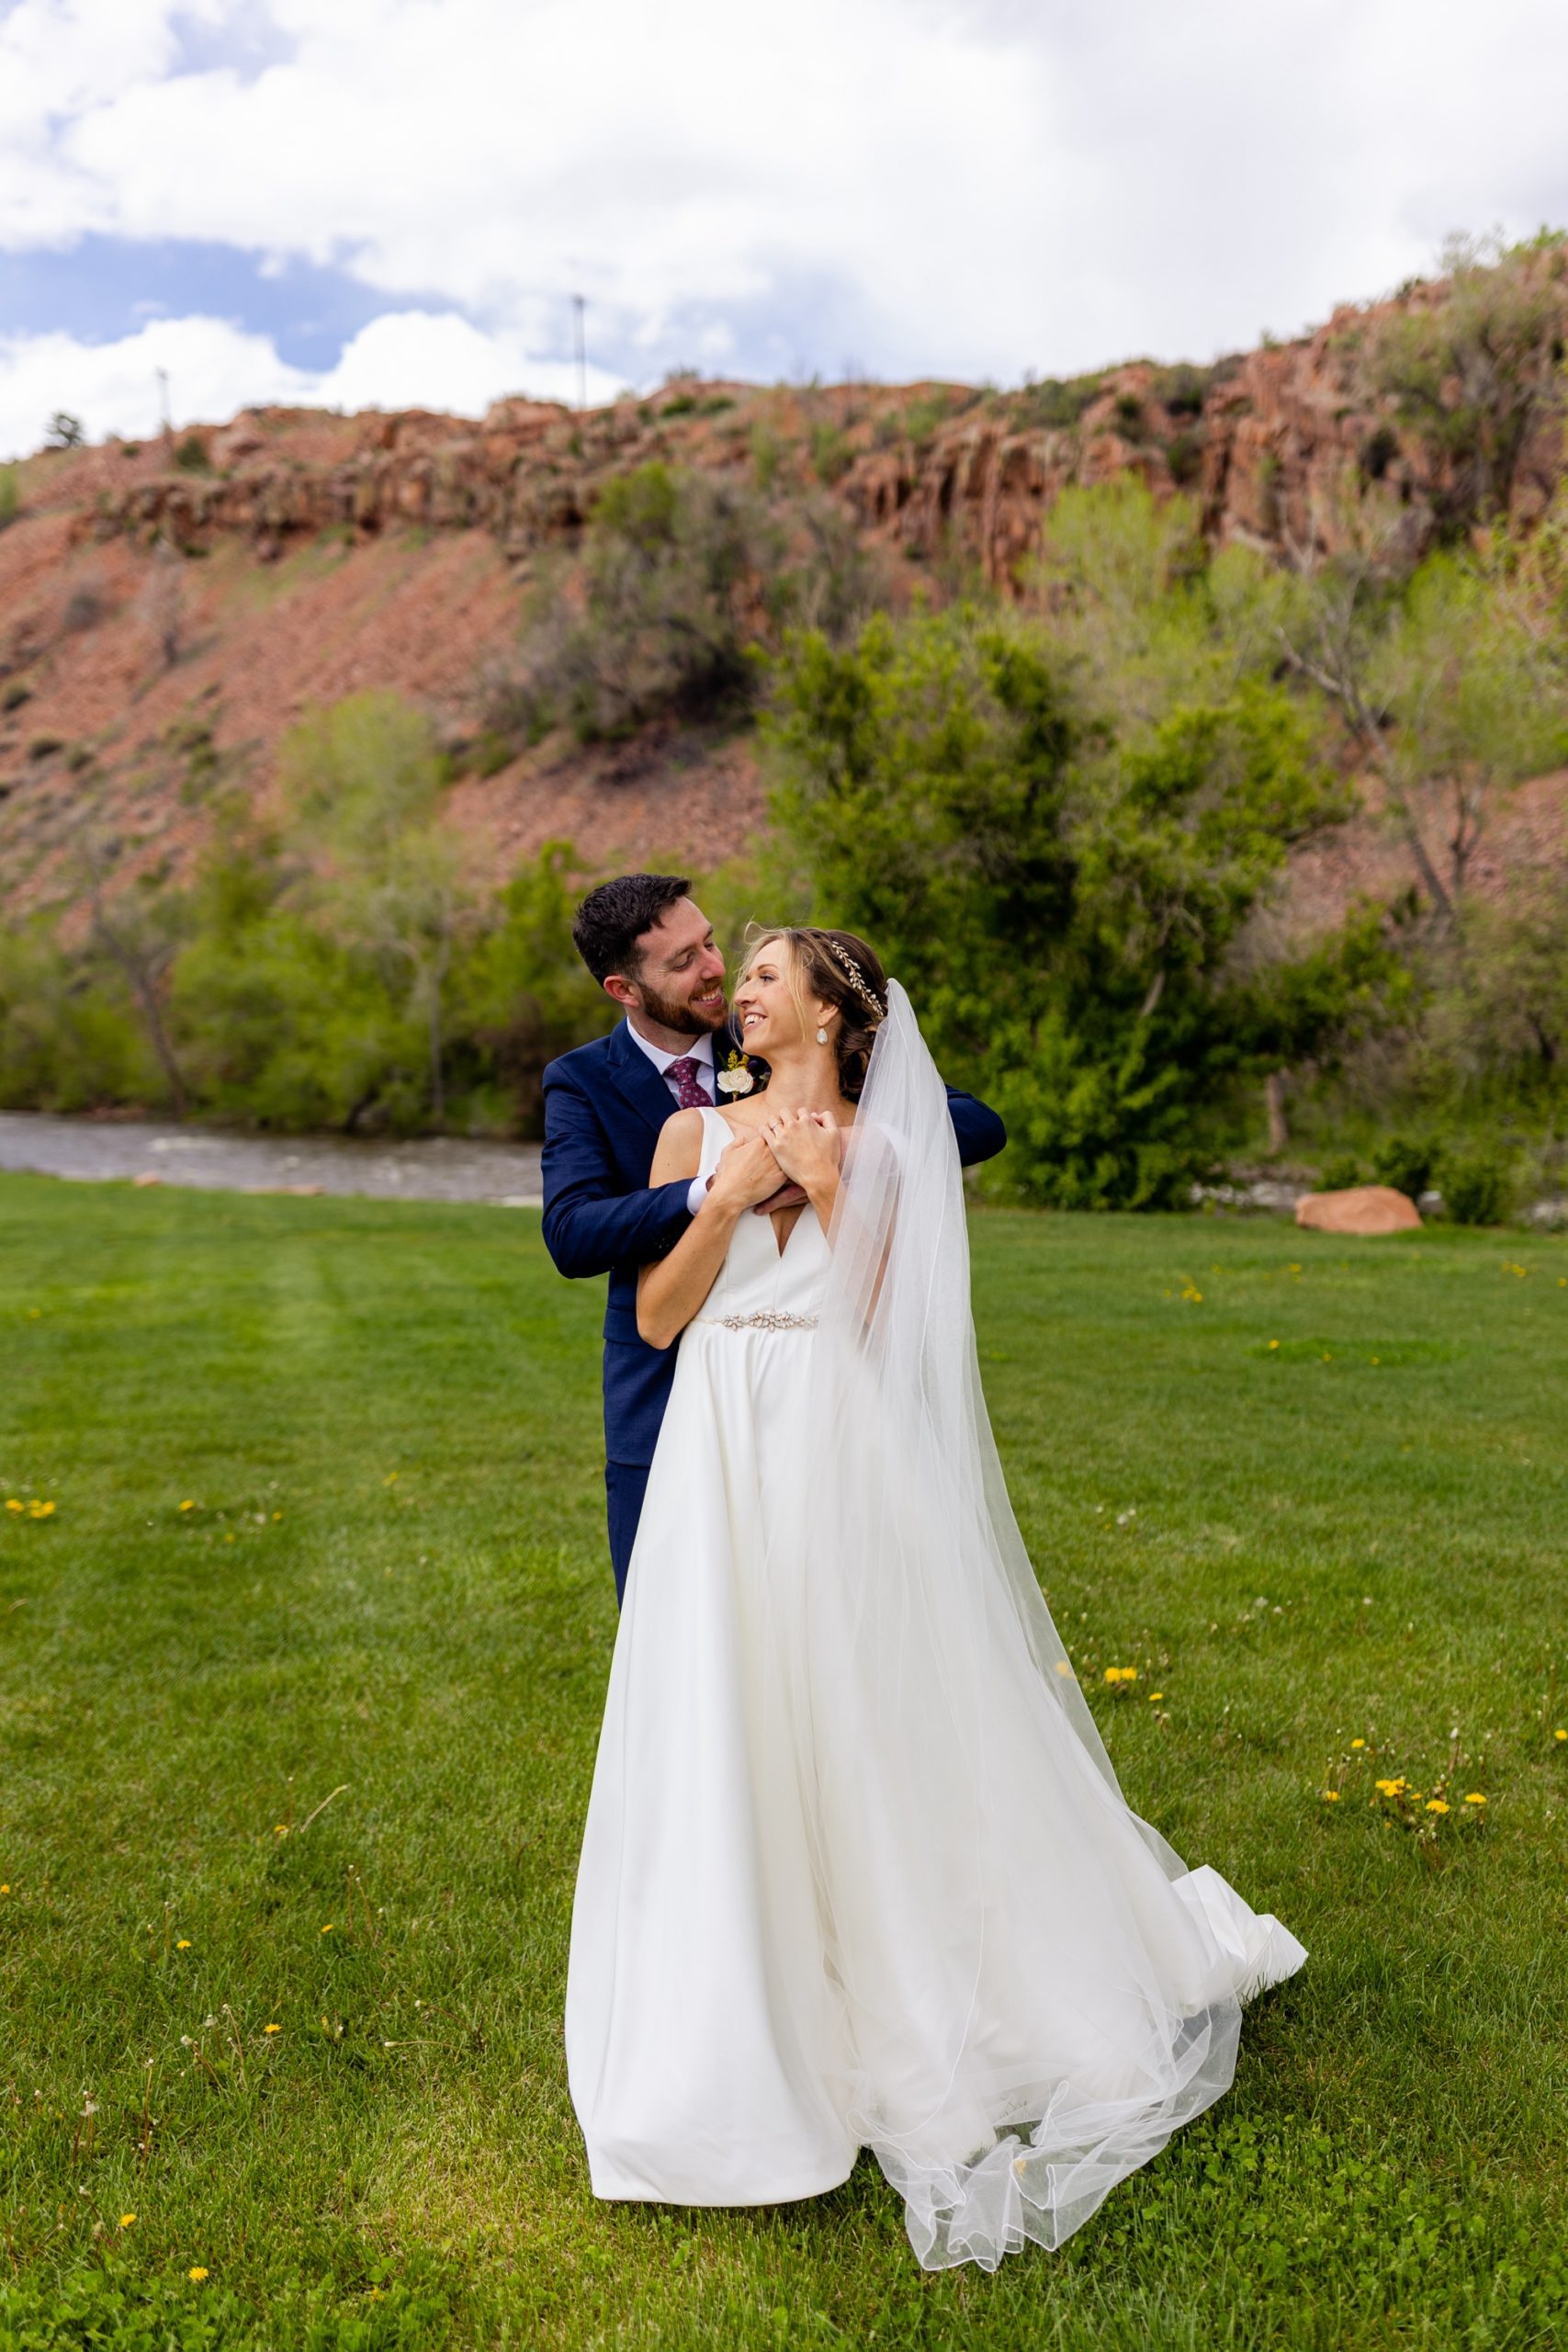 Planet Bluegrass Wedding venue in Lyons Colorado: Colorado Wedding Photographer, Bride and Groom portraits, Wedding photography, Wedding poses